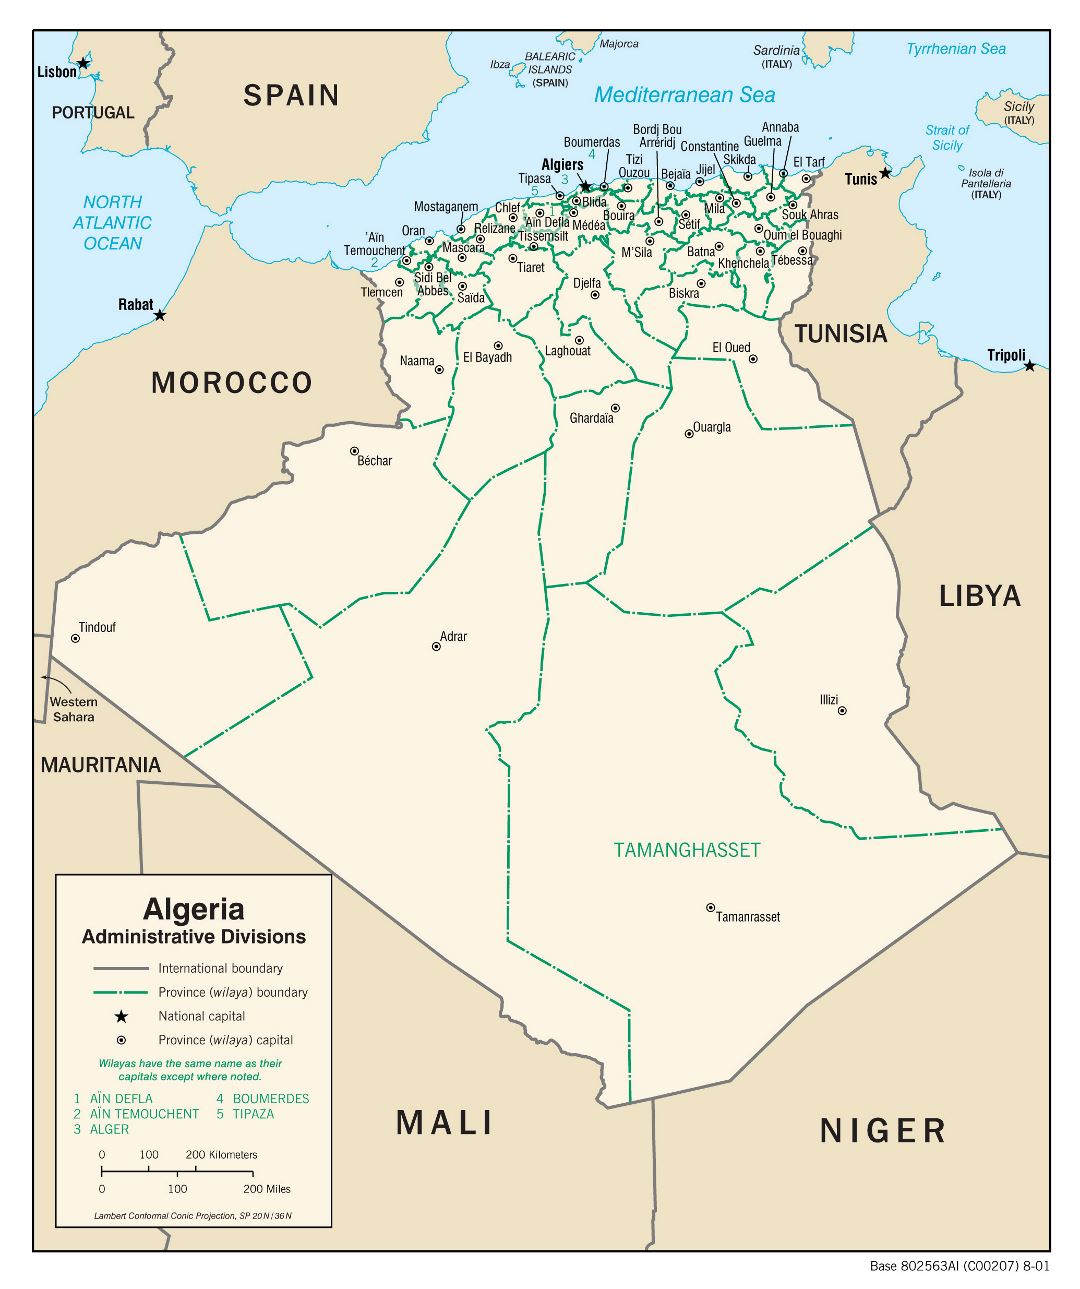 Grande detallado mapa de administrativas divisiones de Argelia - 2001